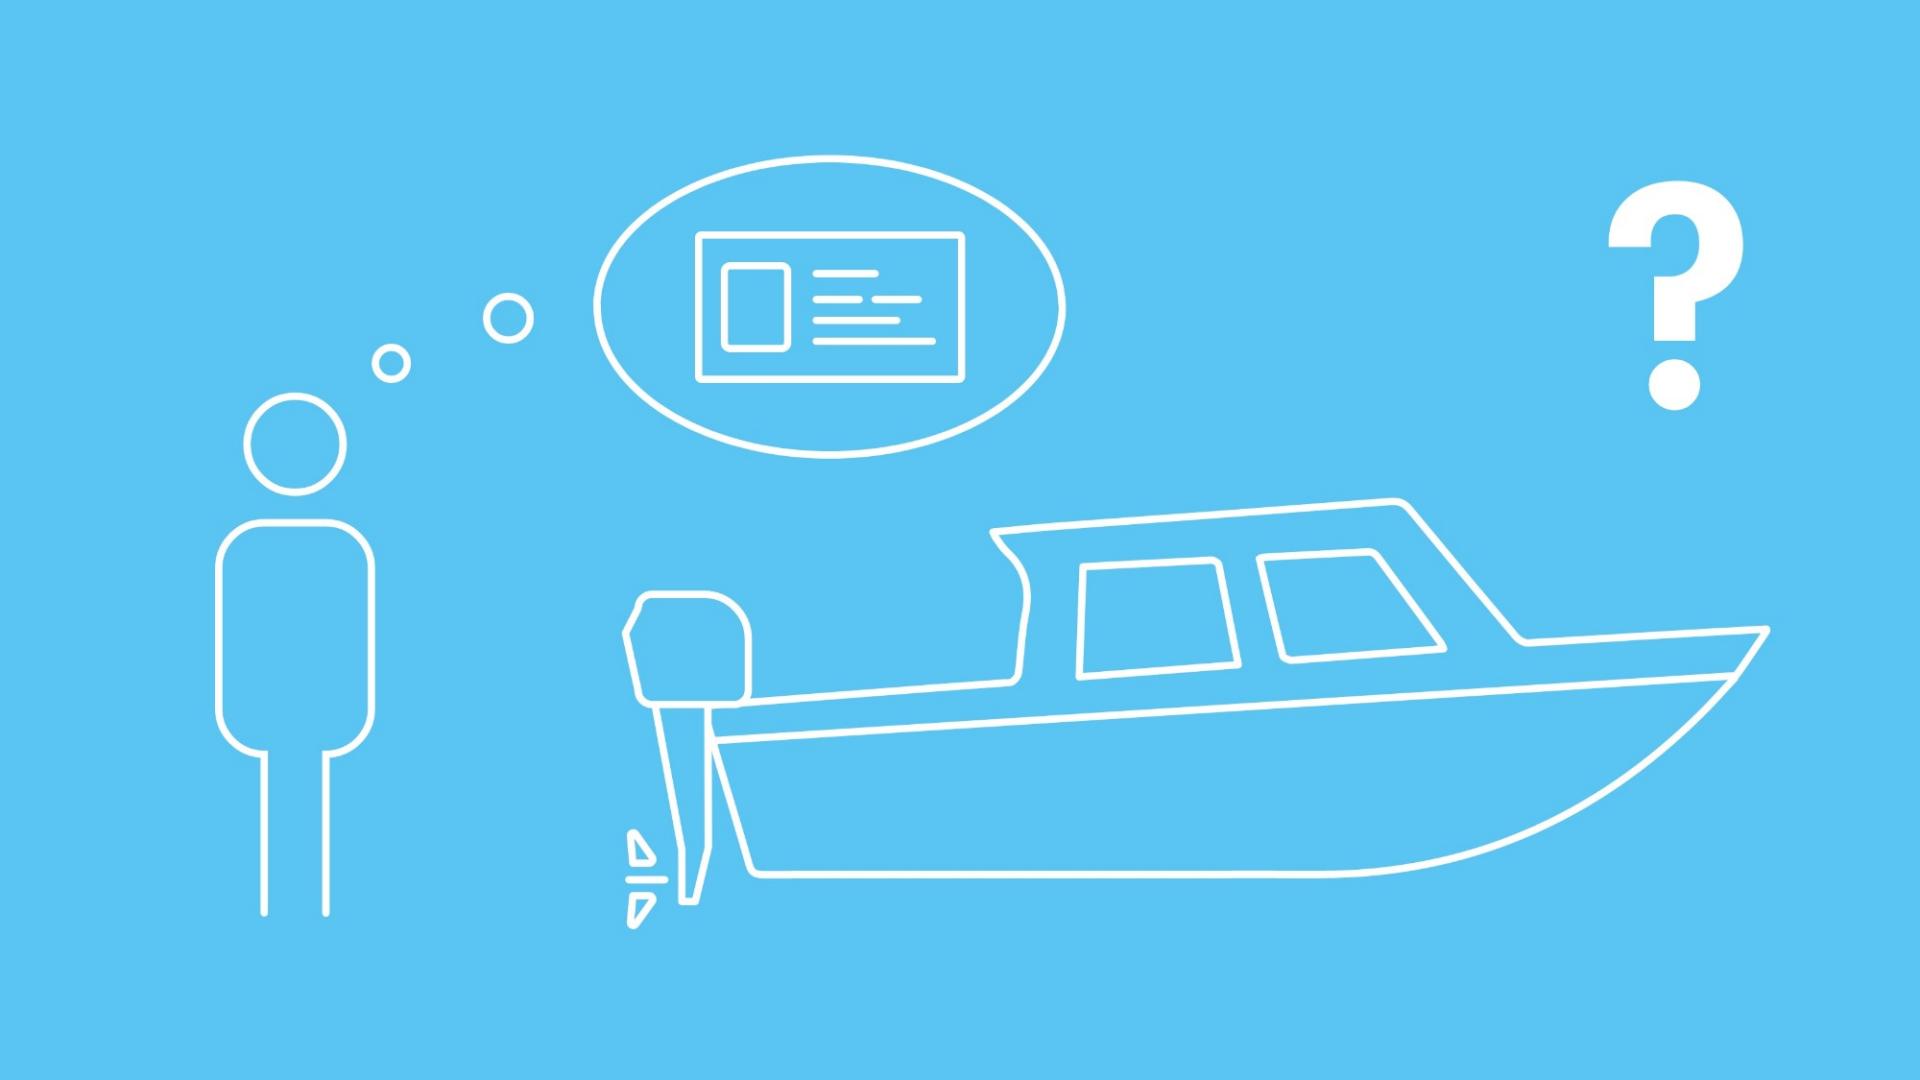 Die Grafik zeigt ein Boot in Icon-Form, das mit einer Plane abgedeckt ist, um es vor Frostschäden zu schützen. 